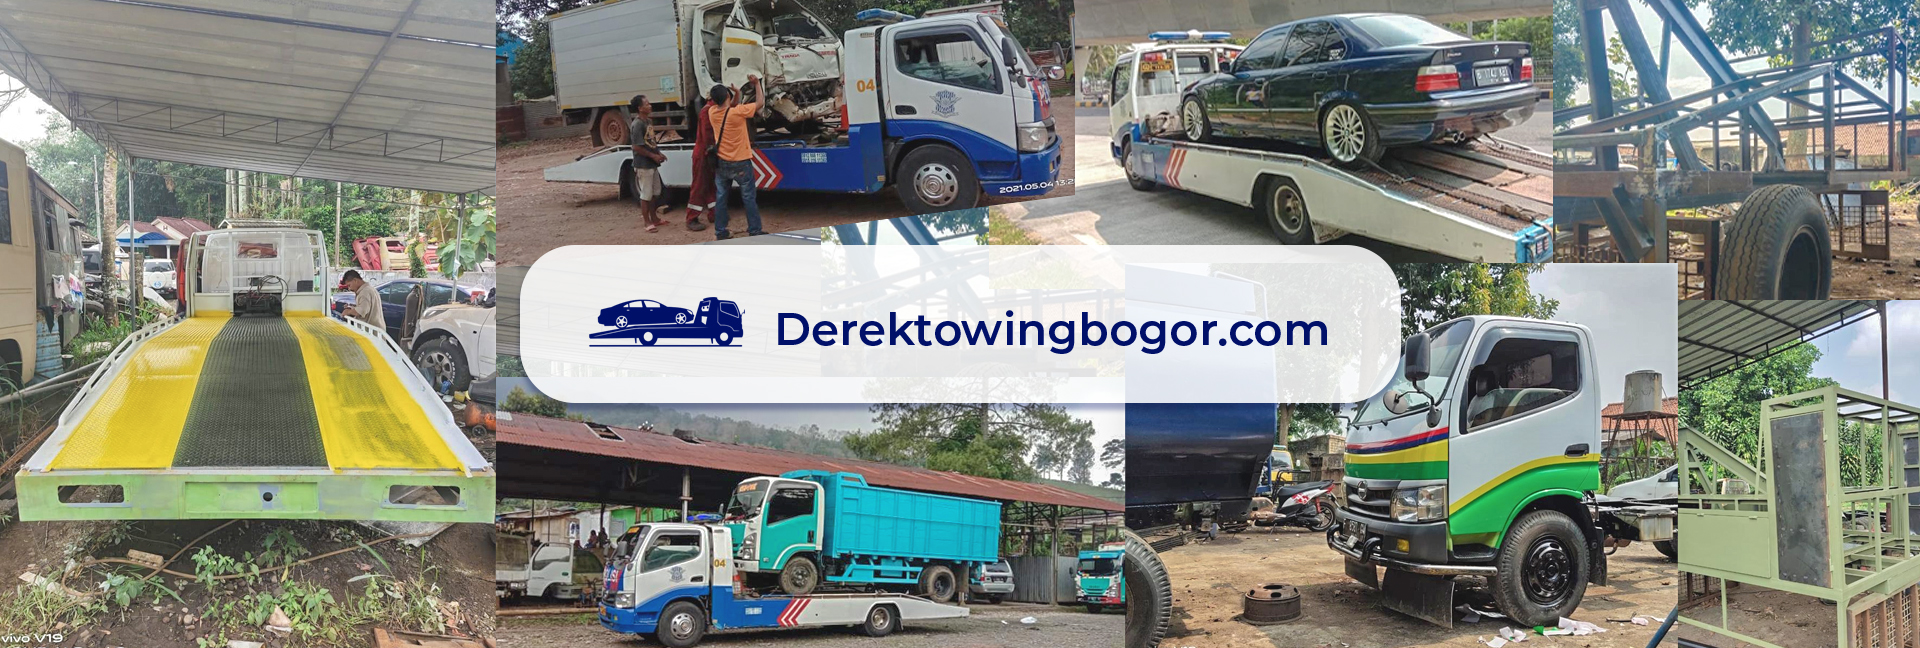 Derek Towing Bogor 24 jam | Derek towing khusus area bogor,